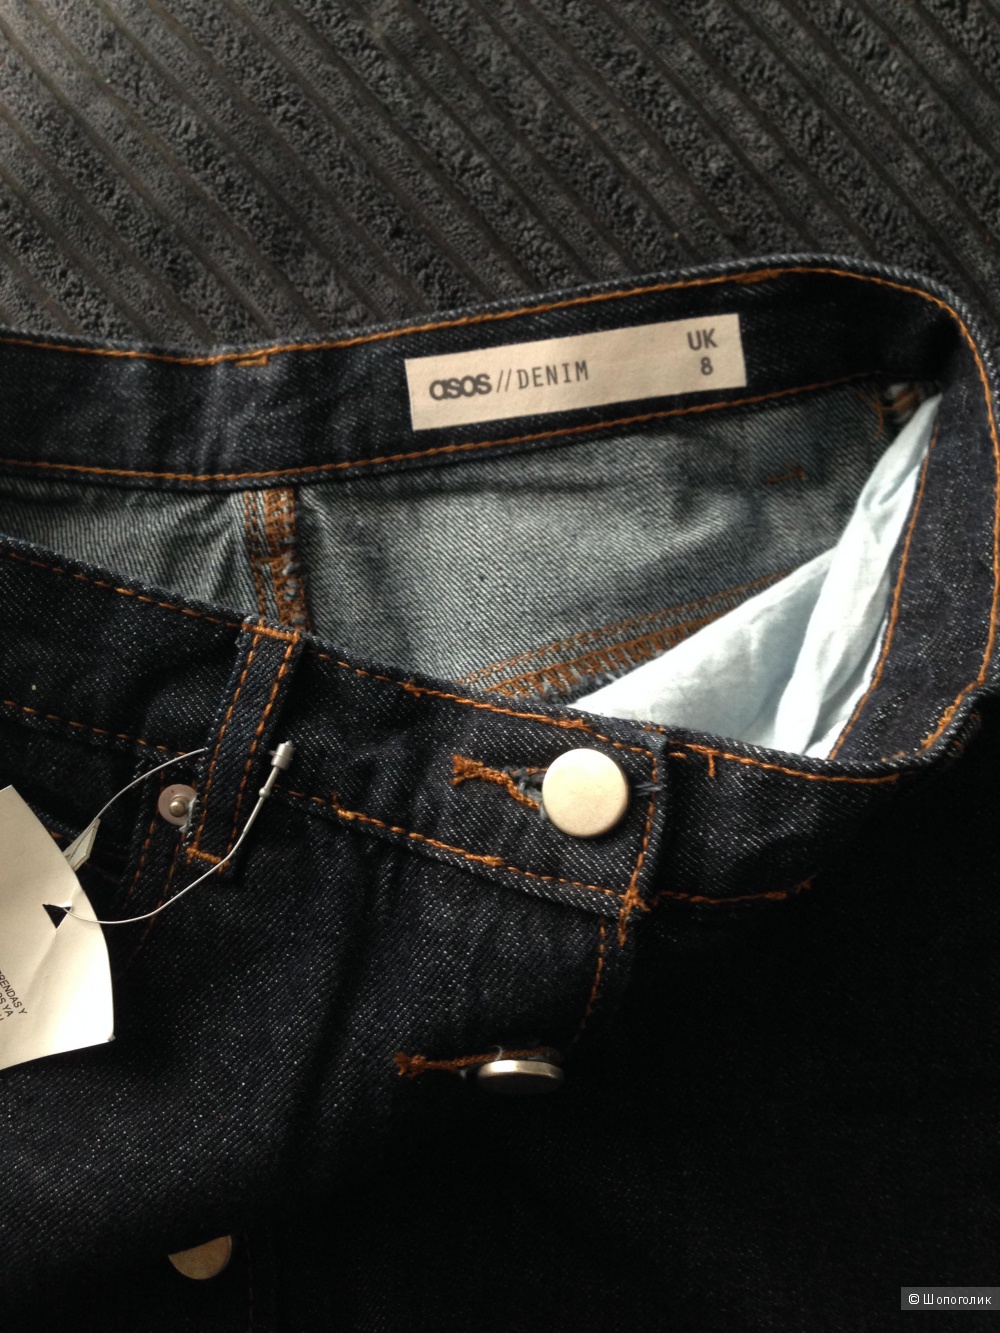 Джинсовая юбка‑трапеция с контрастными швами ASOS (размер UK 8)